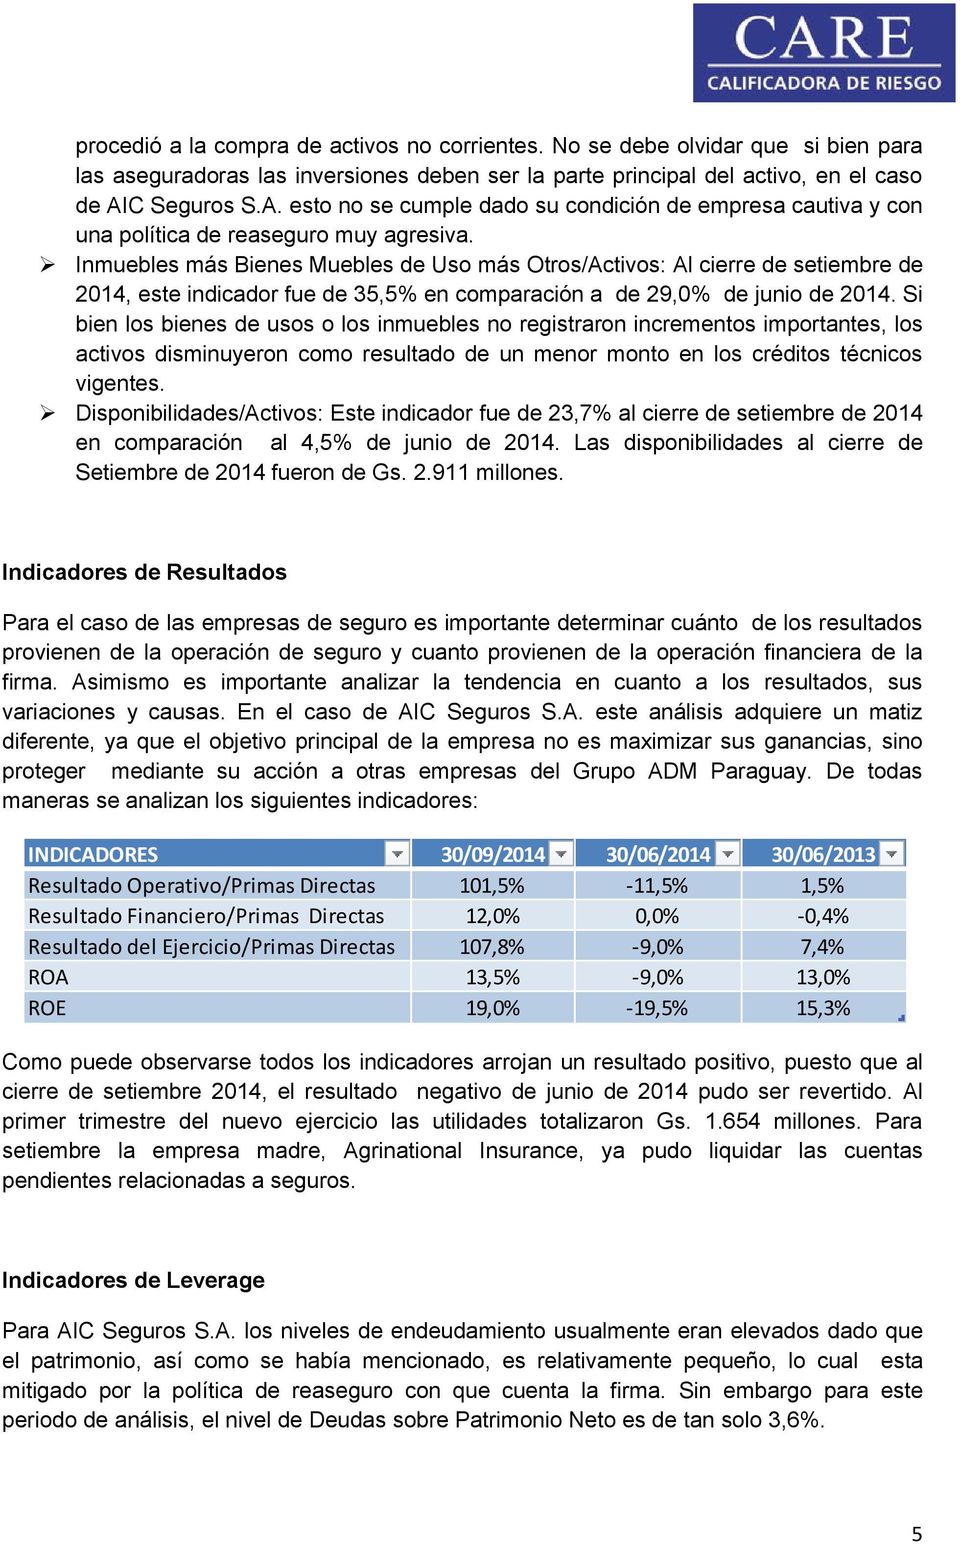 Inmuebles más Bienes Muebles de Uso más Otros/Activos: Al cierre de setiembre de 2014, este indicador fue de 35,5% en comparación a de 29,0% de junio de 2014.